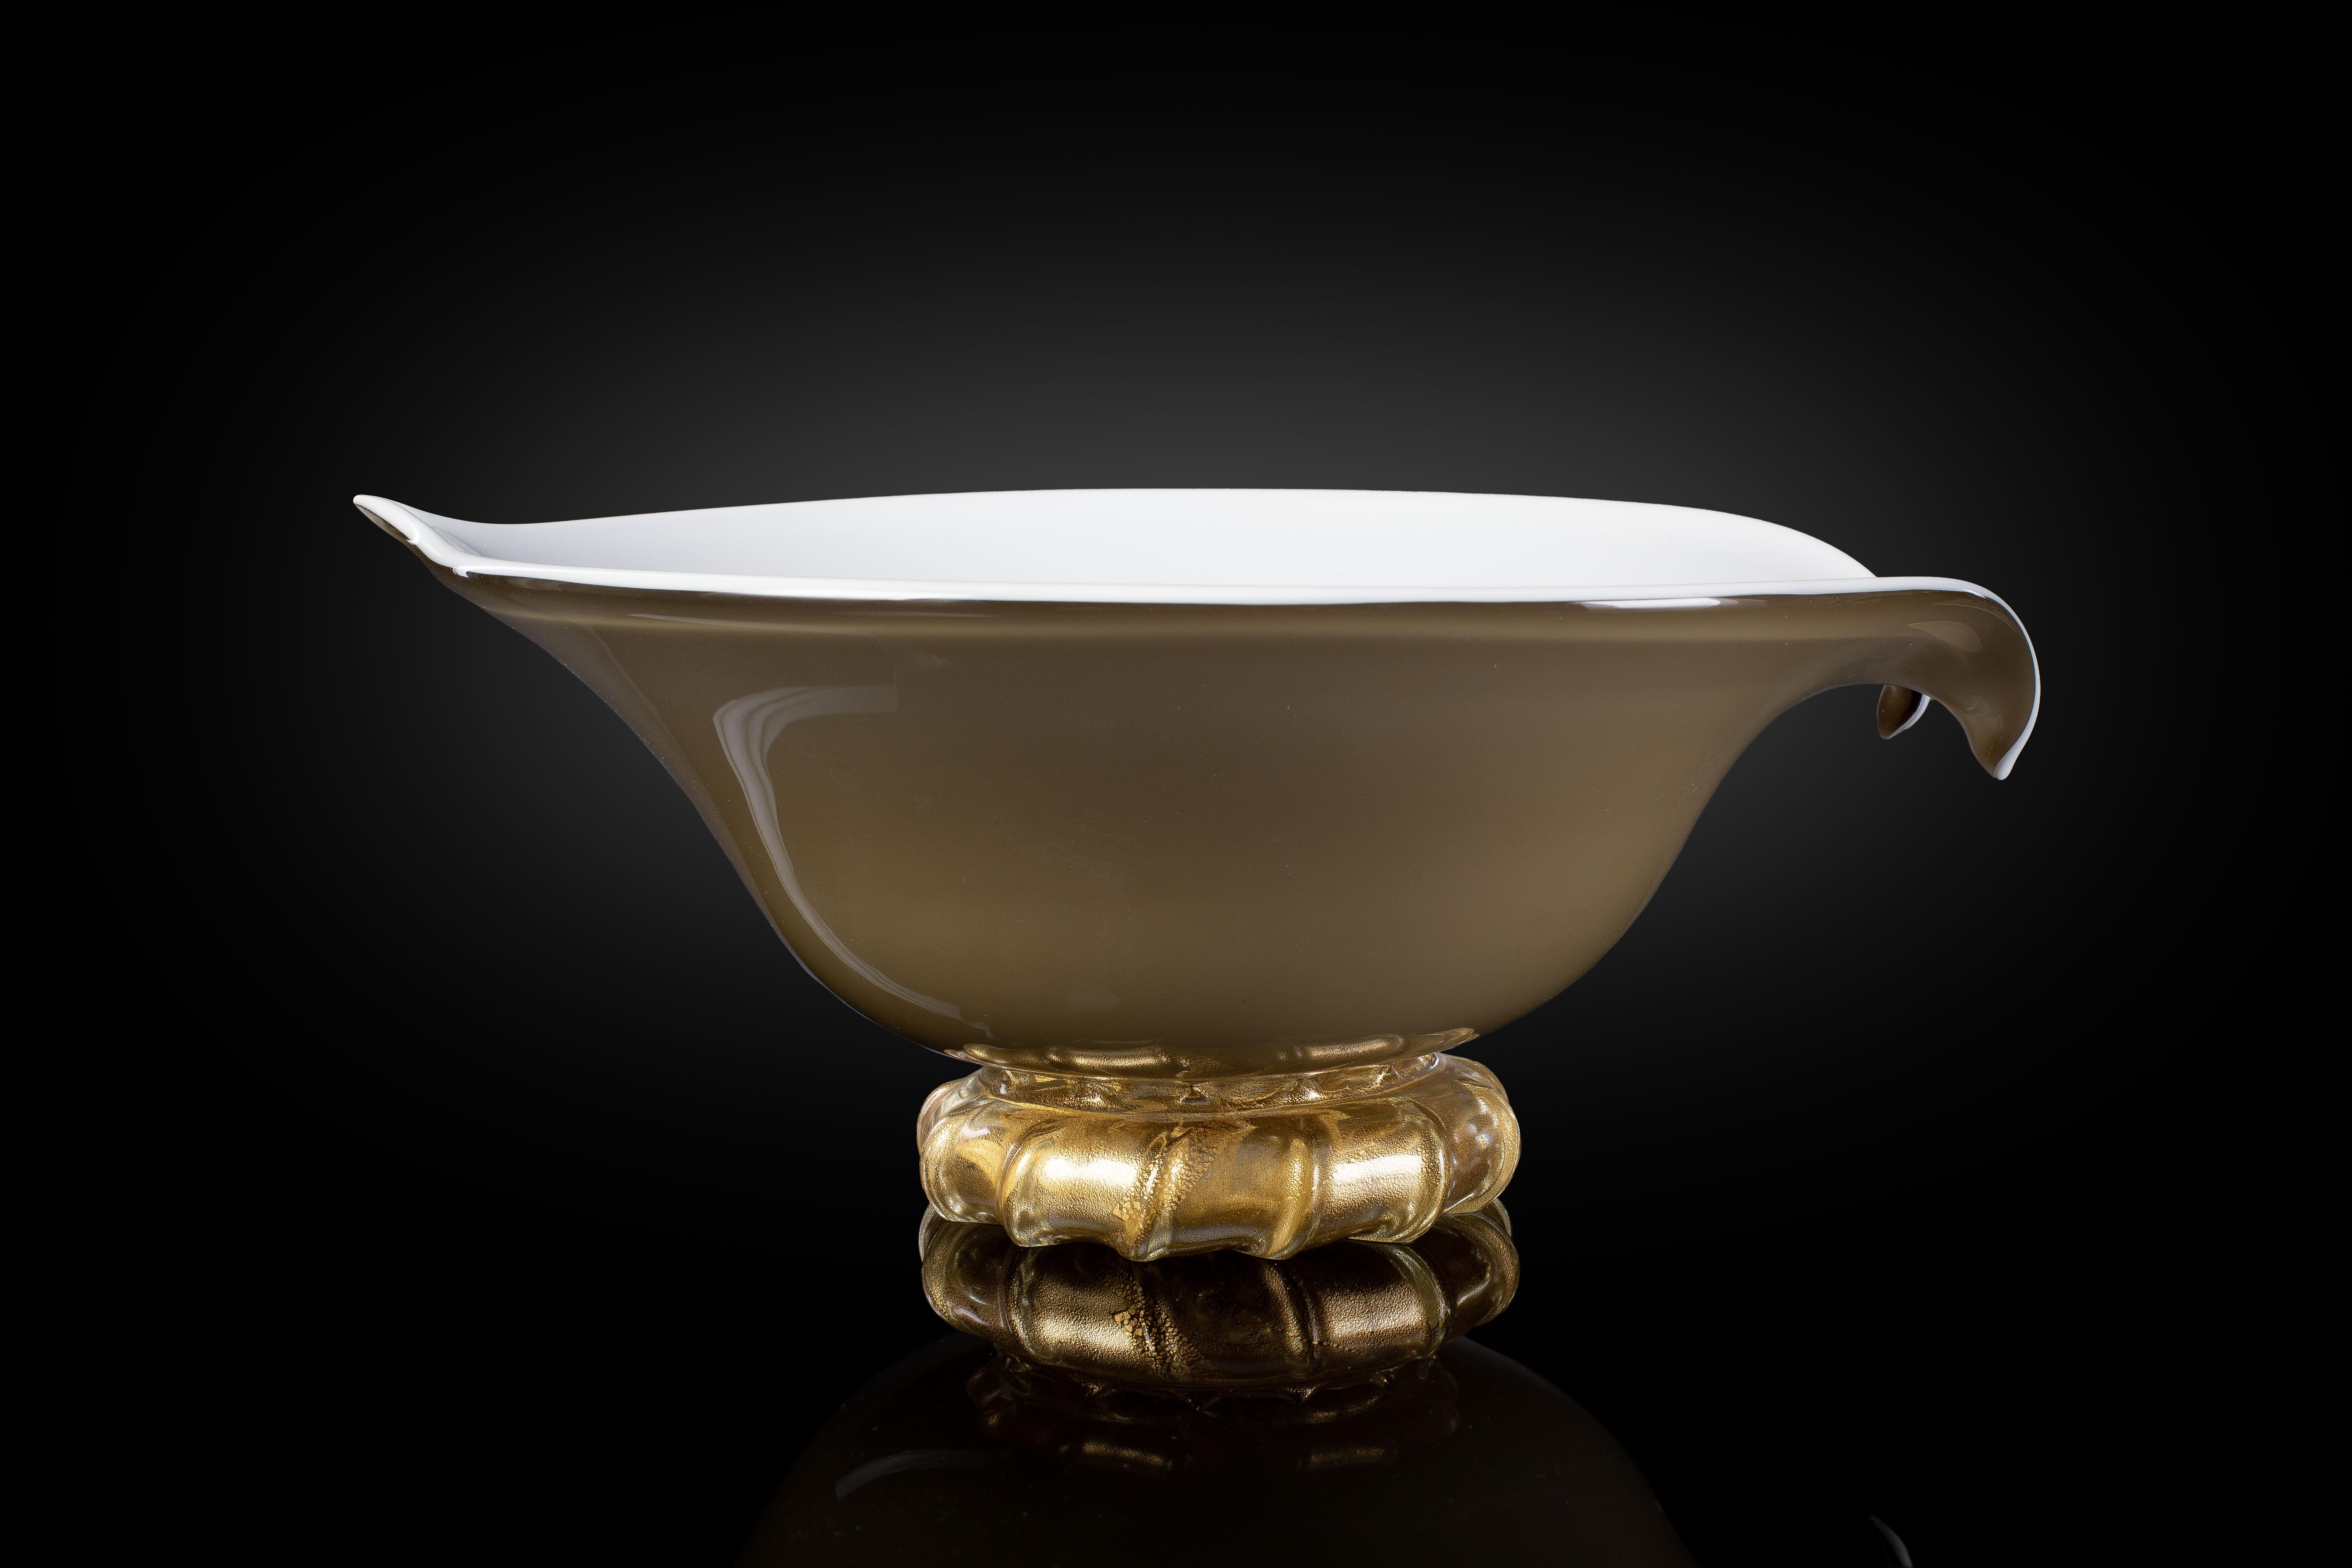 Unser Ziel ist die Emotion, durch das Glas, durch den Geist der Kunst zu erhellen.

1295 MURANO ist ein Ofen, ein Designlabor und eine Innenansicht
Zu den exklusivsten Produktionen aus Murano-Glas.
Unser Glas ist original, hergestellt mit den